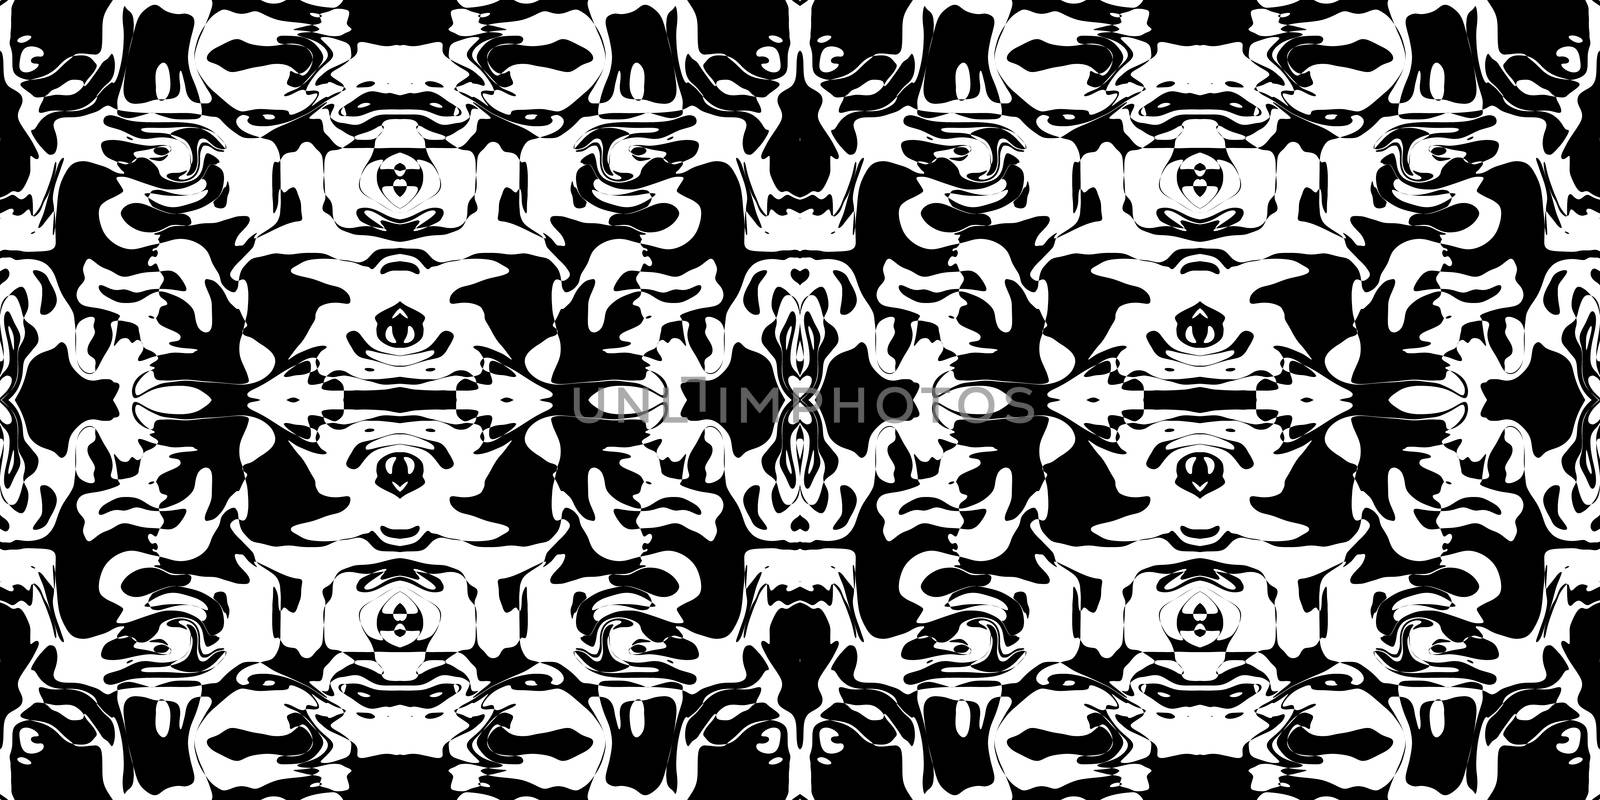 Rorschach Test Ink Blot Texture. Seamless Monochrome Darkness Pattern Background.